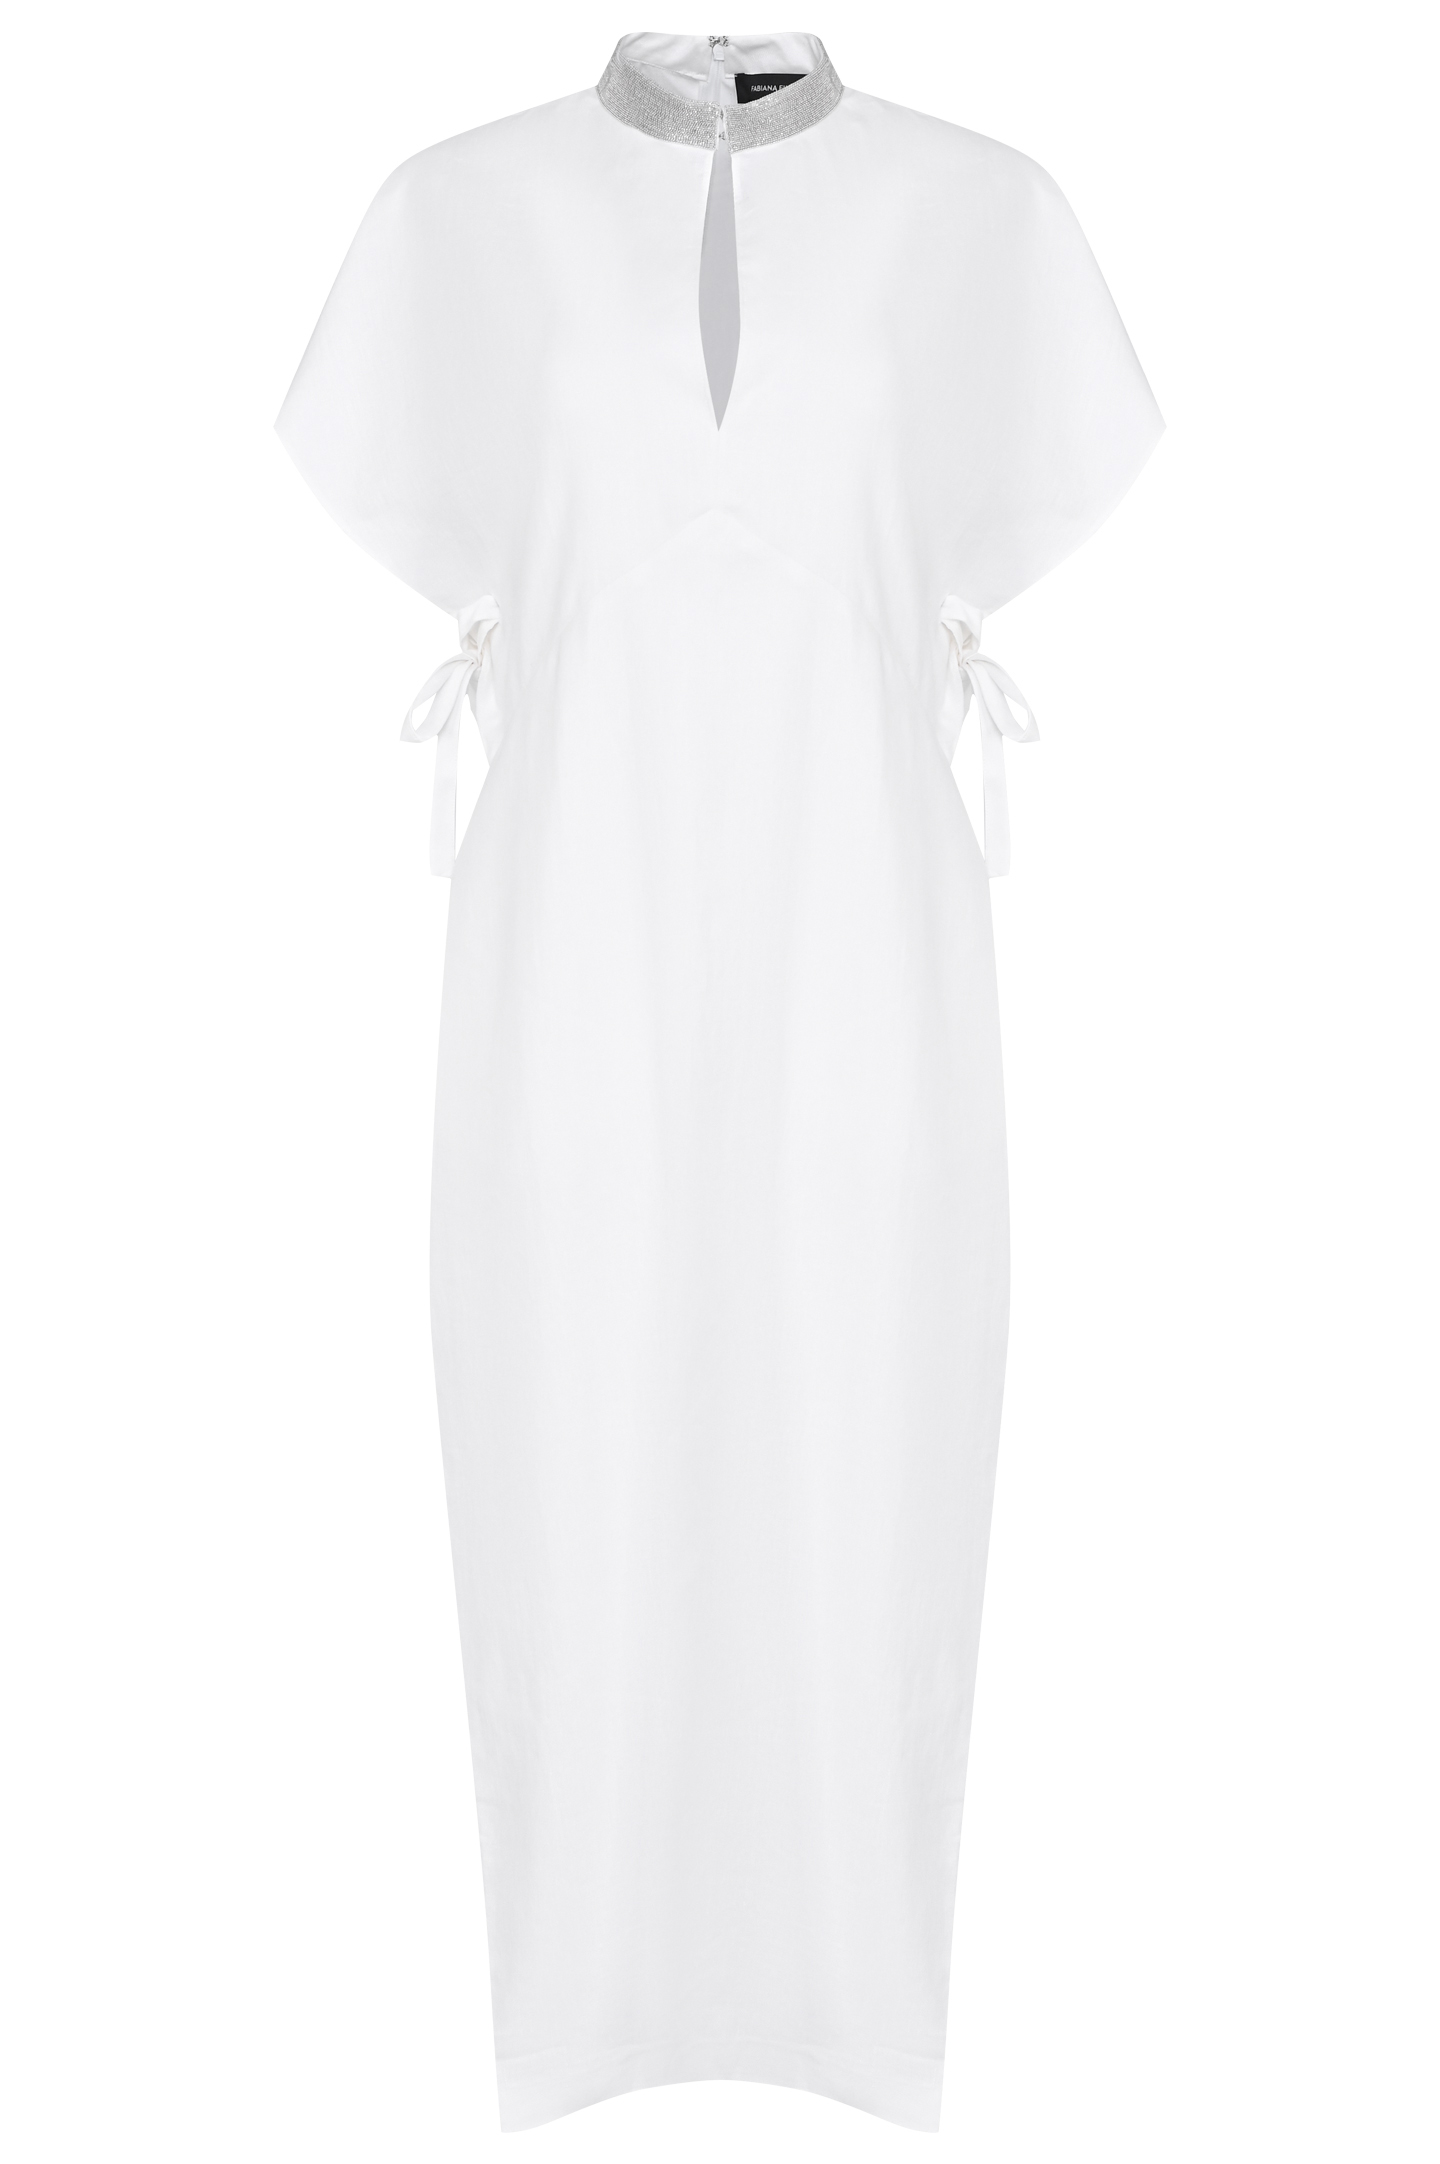 Платье FABIANA FILIPPI ABD273B577I820, цвет: Белый, Женский